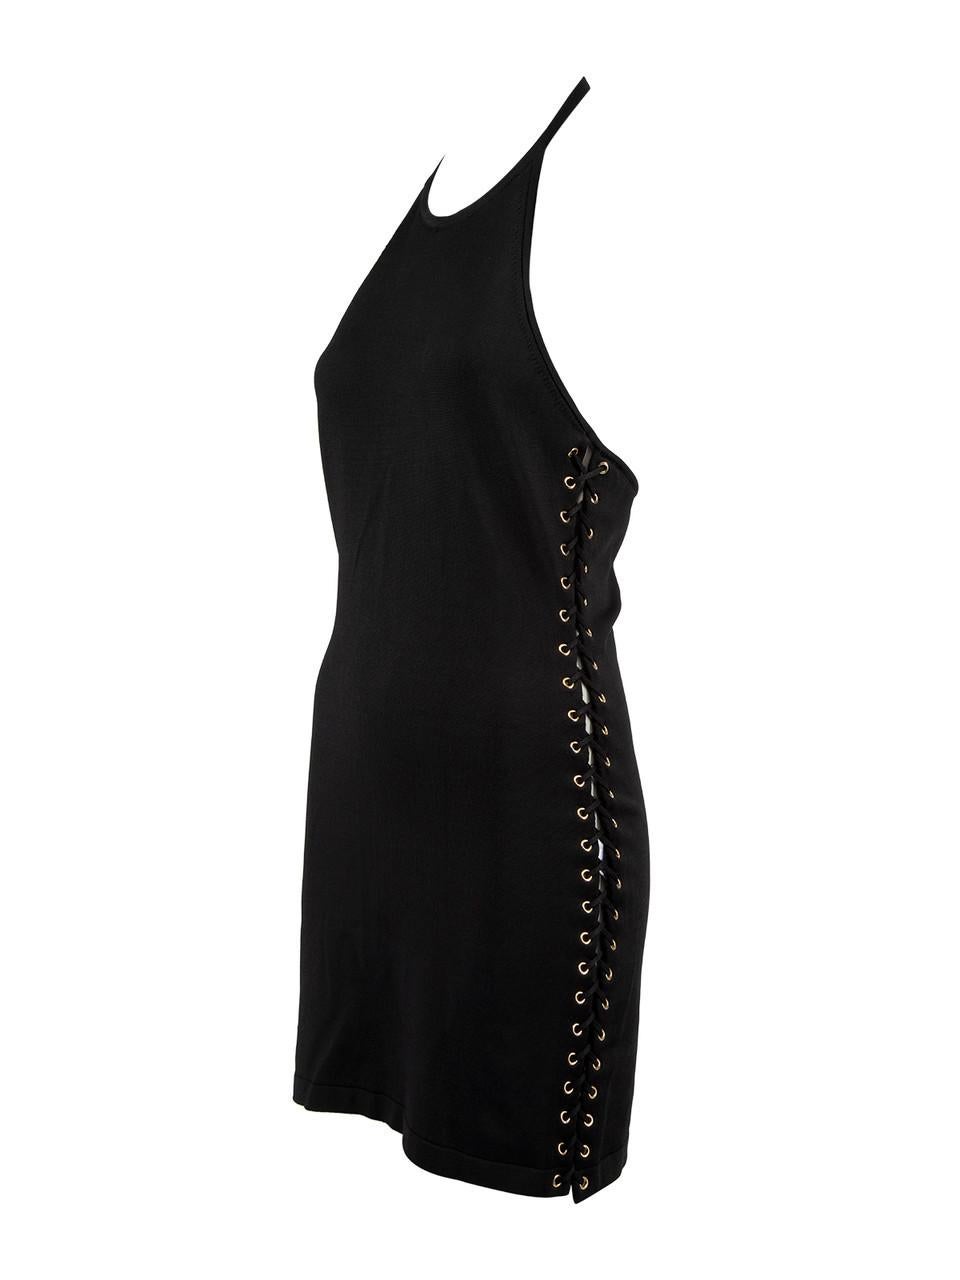 Pre-Loved Balmain Women's Black Halter Neck Mini Dress 1